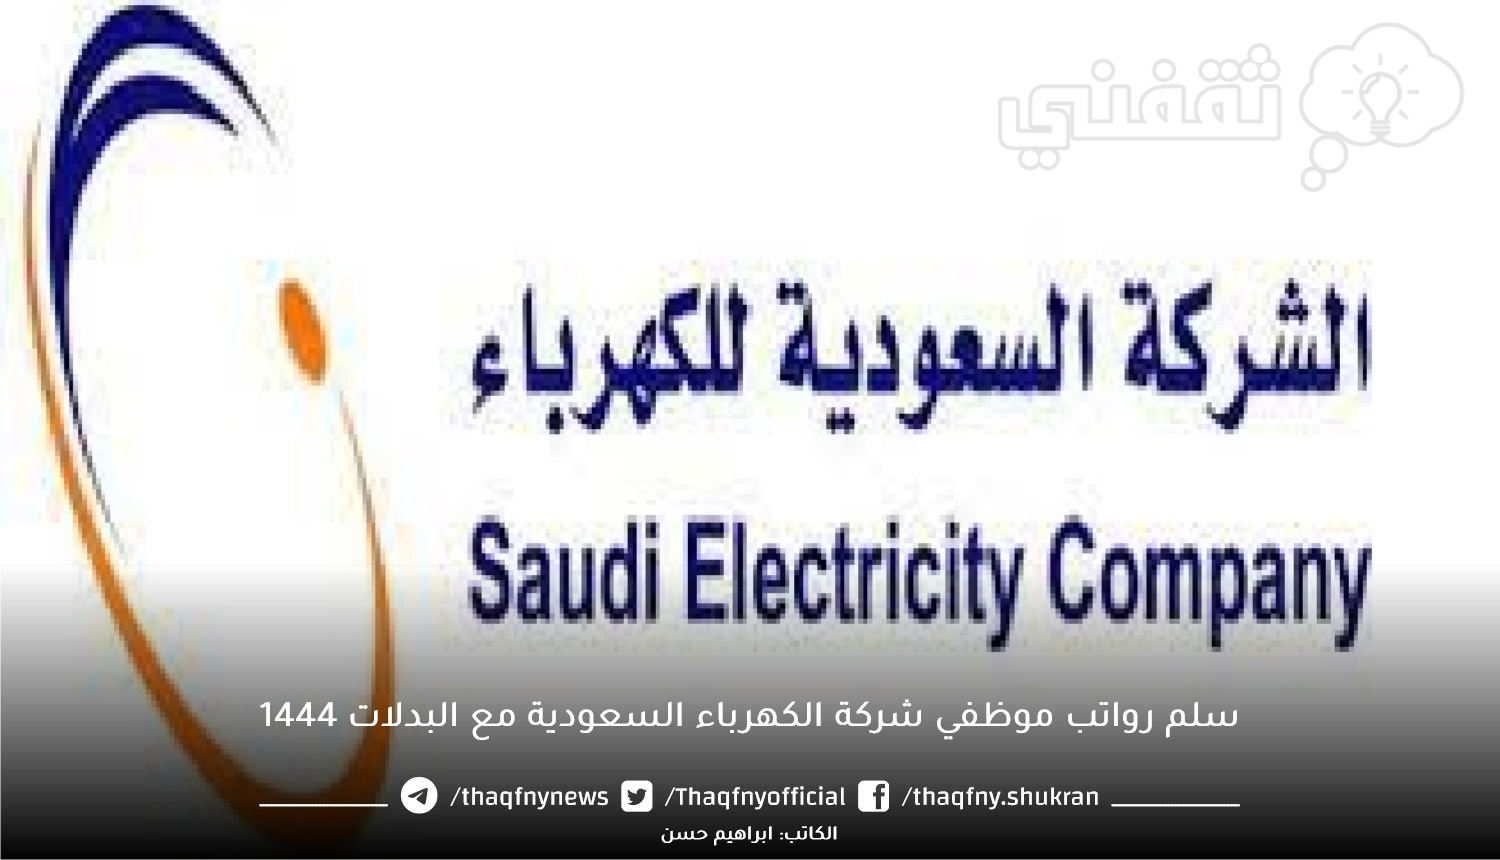 سلم رواتب موظفي شركة الكهرباء السعودية مع البدلات 1444.png